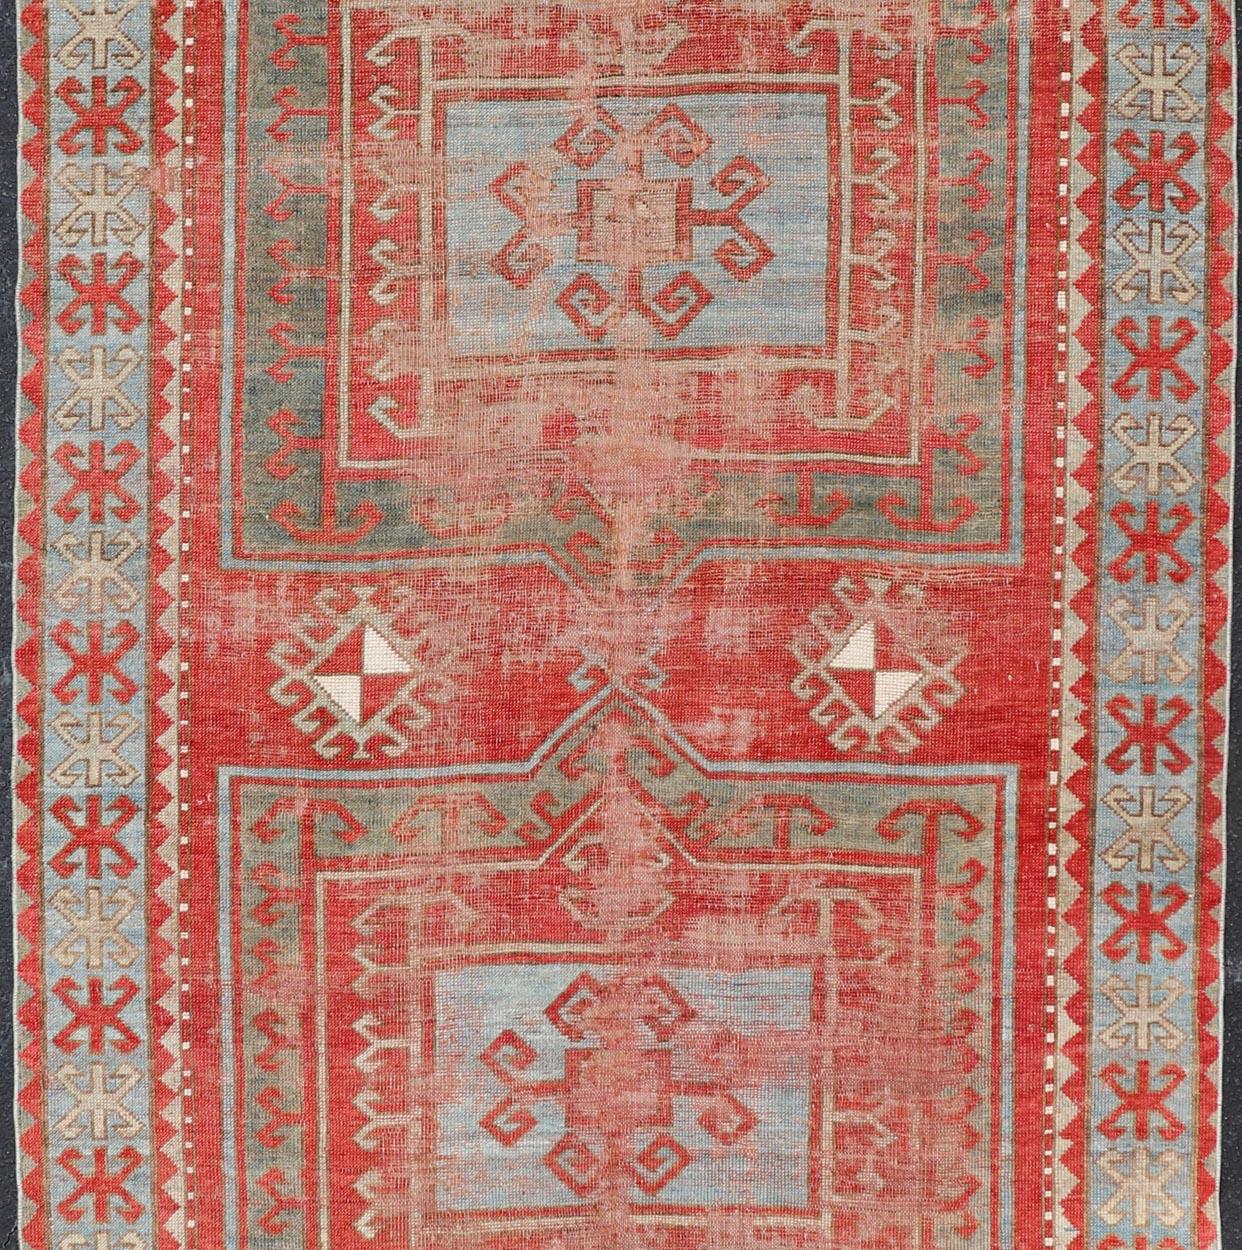 Dieser antike, handgeknüpfte Kazak-Teppich zeigt ein geometrisches Doppelkästchenmuster und ist von einer komplementären, mehrstufigen Bordüre umgeben. Der Teppich ist in blauen, cremefarbenen, roten und braunen Tönen gehalten und passt damit